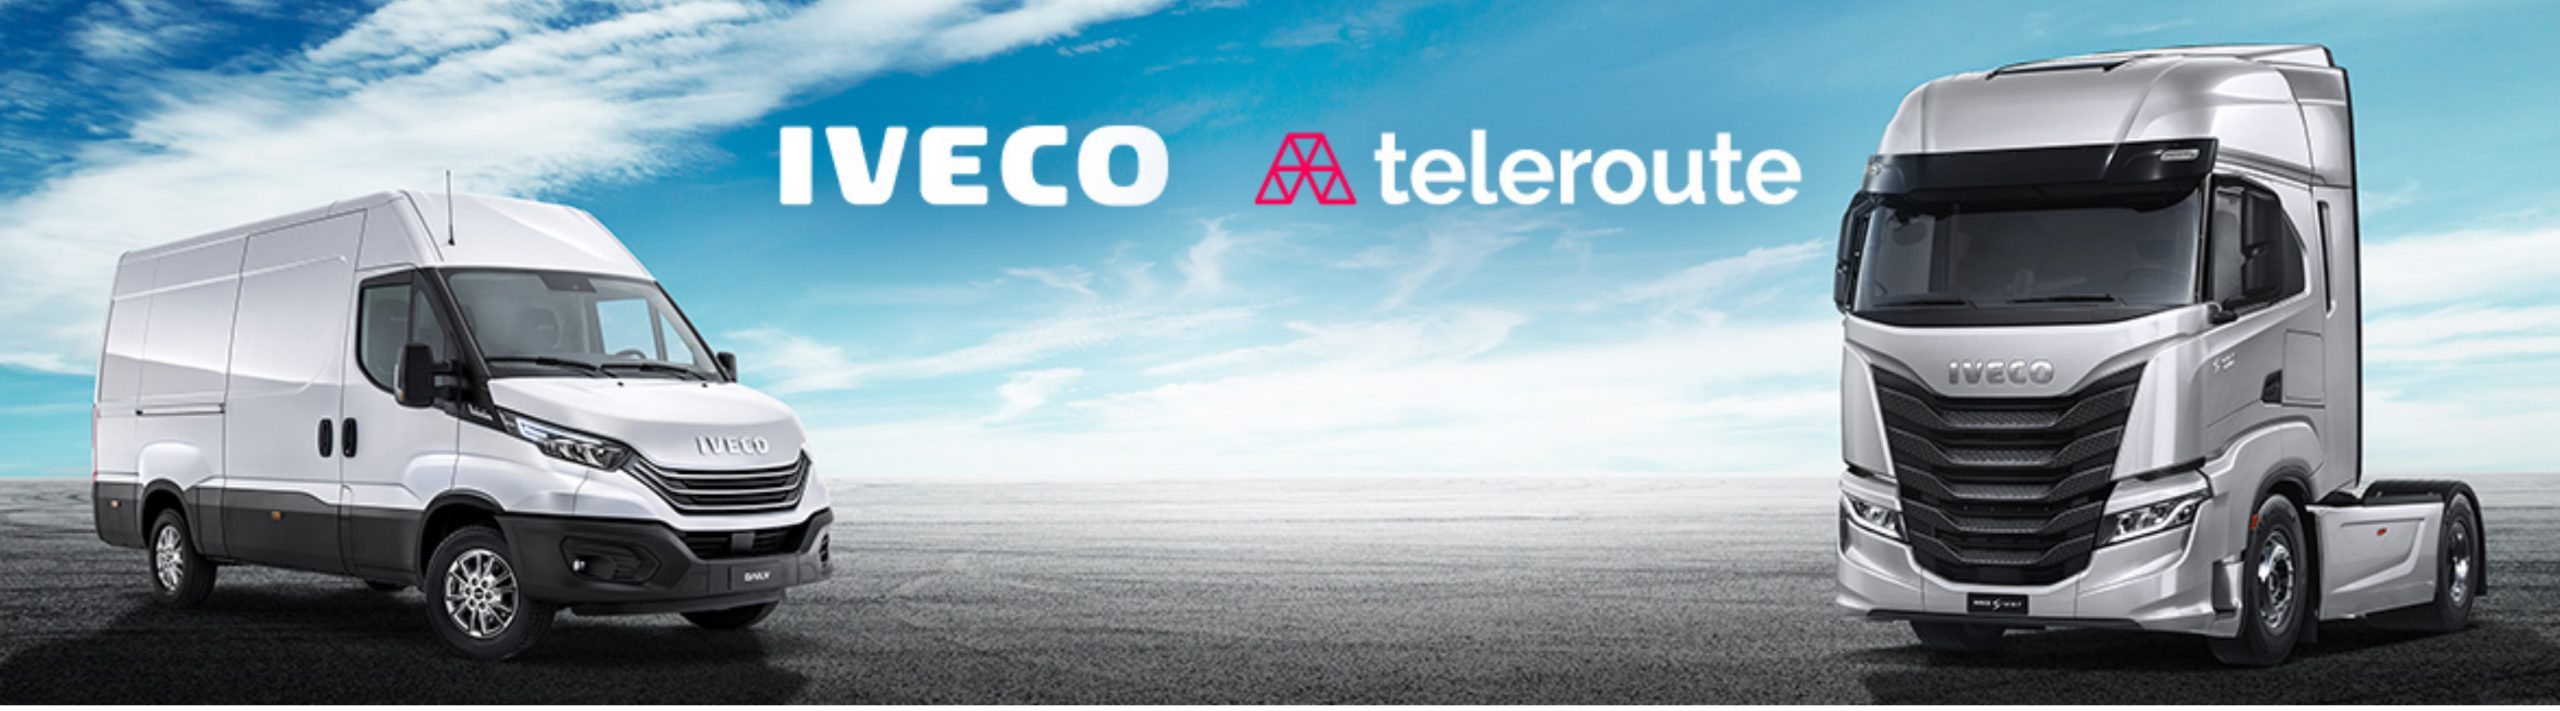 La borsa carichi Teleroute offre a tutti i clienti IVECO un mese di utilizzo gratuito!